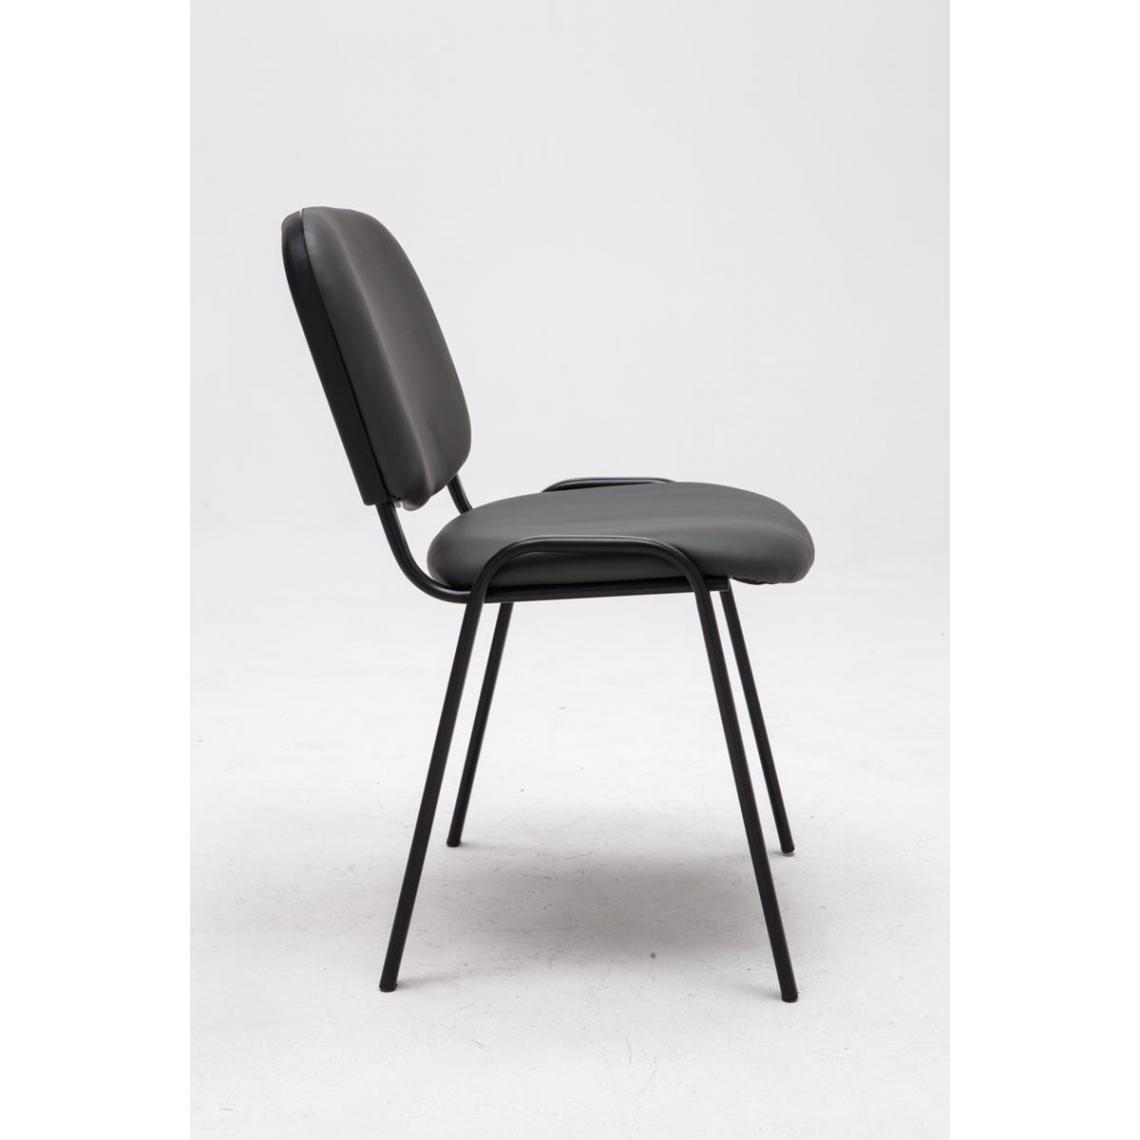 Decoshop26 - Chaise visiteur assise rembourrée en simili-cuir gris BUR10069 - Chaises